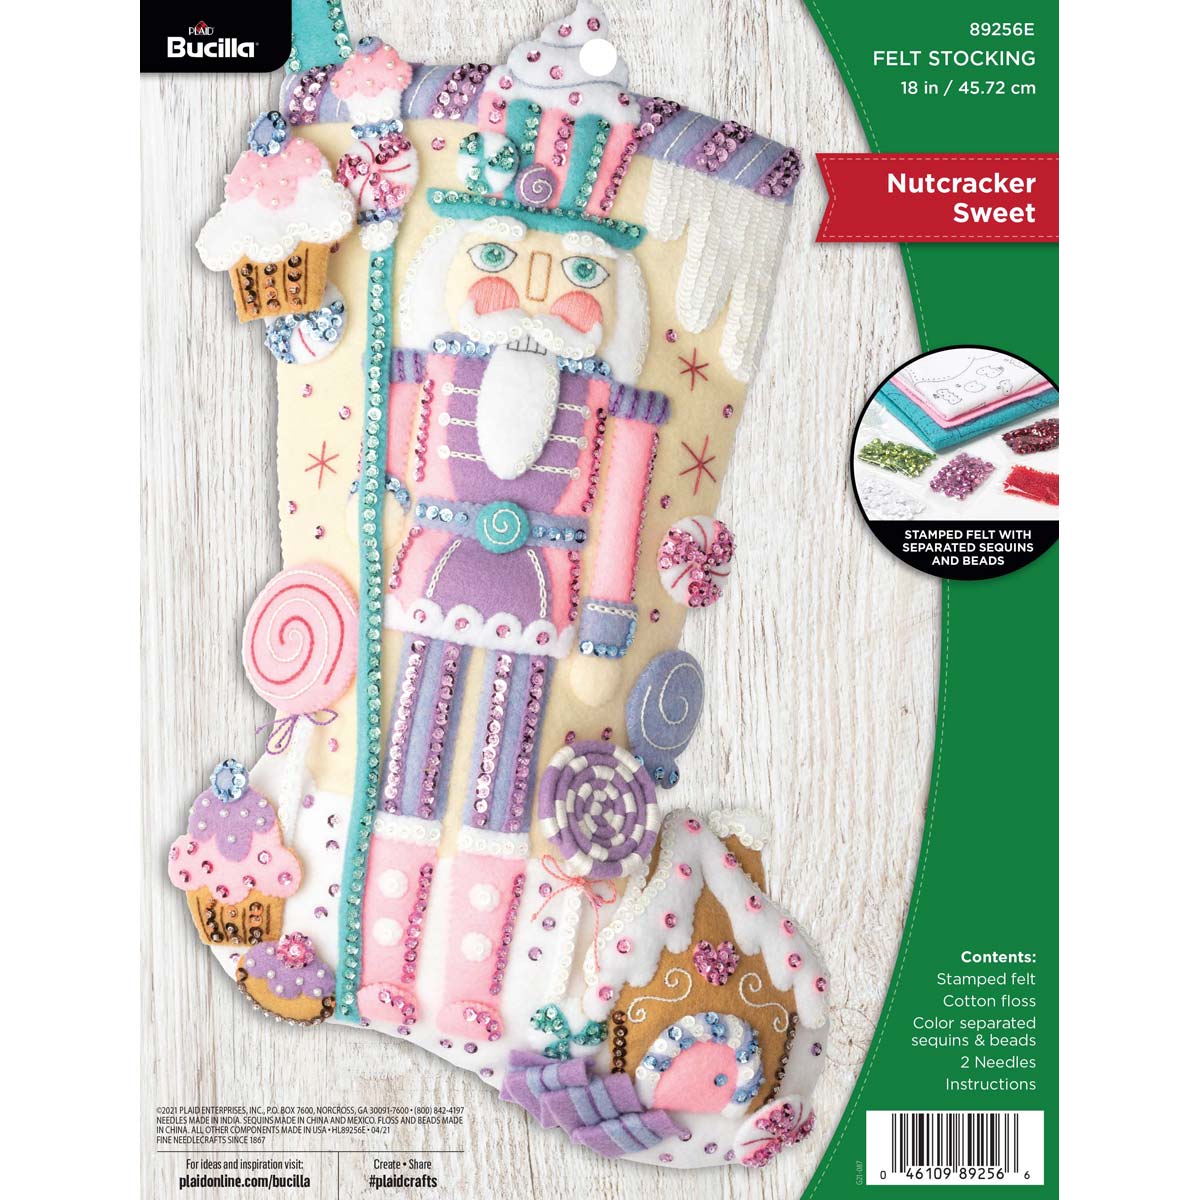 Shop Plaid Bucilla ® Seasonal - Felt - Stocking Kits - Nutcracker Sweet -  89256E - 89256E